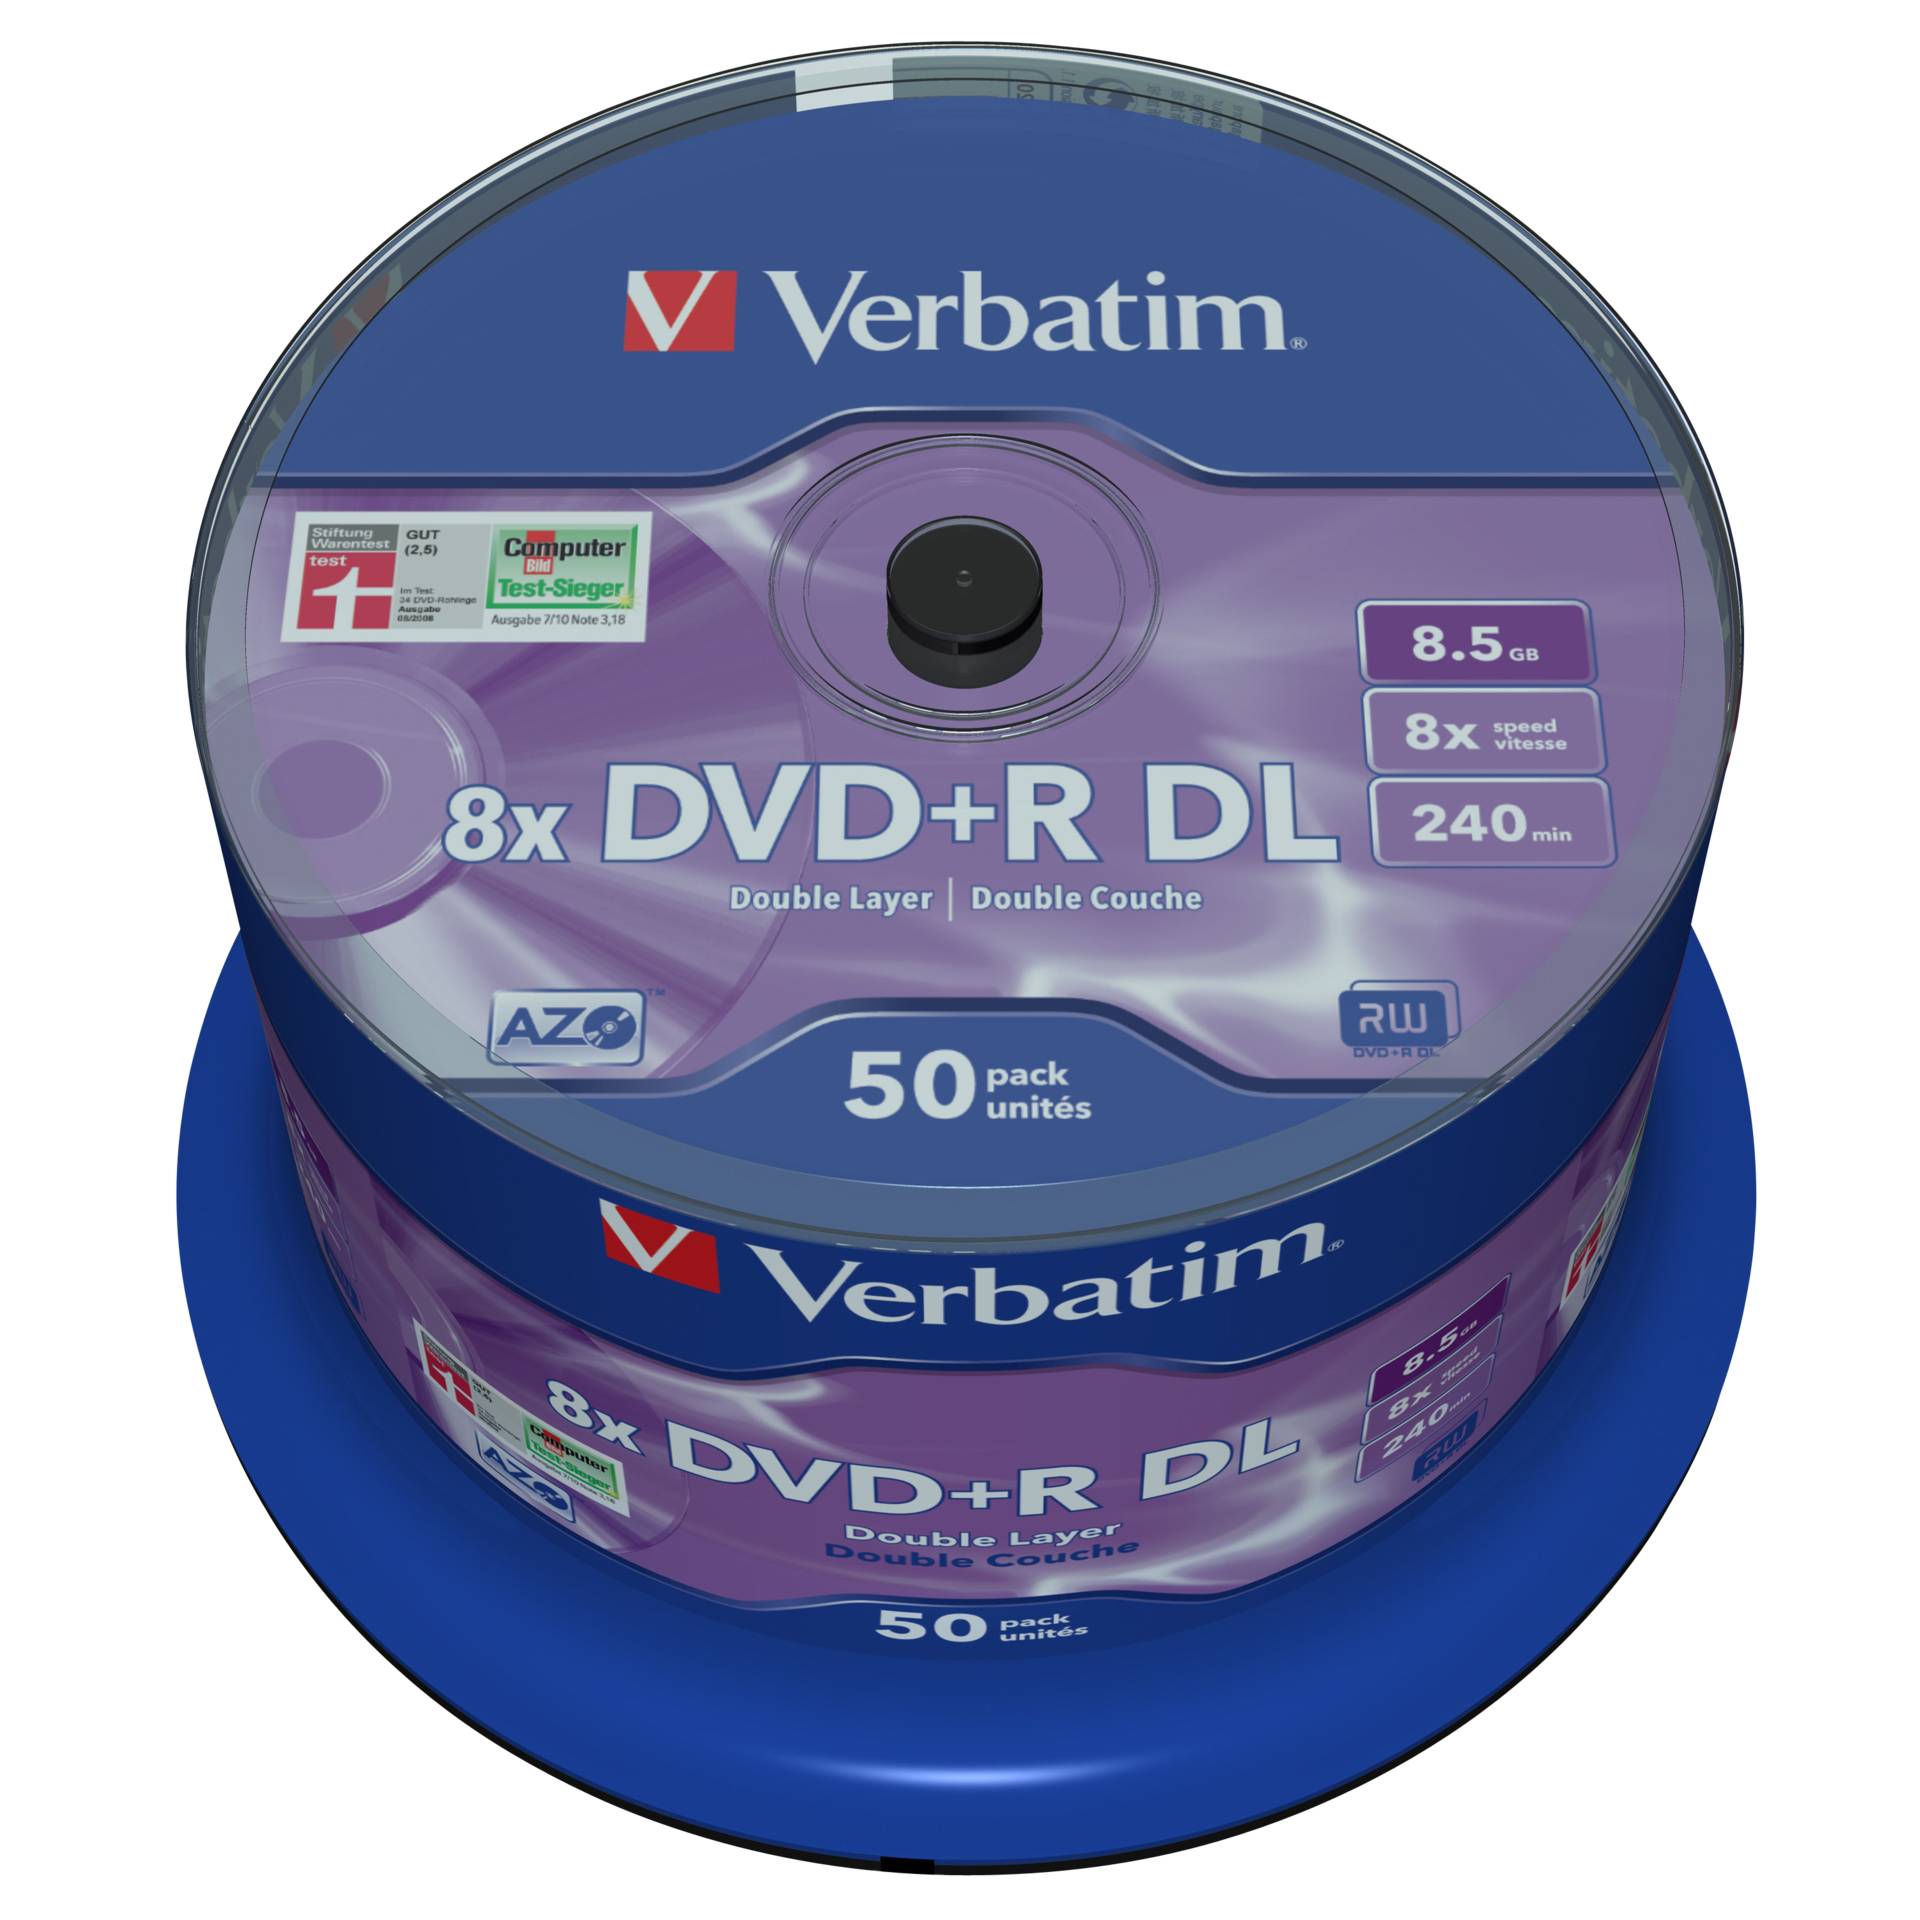 1x50 Verbatim DVD+R Double Layer 8x Speed, 8,5GB opaco argen